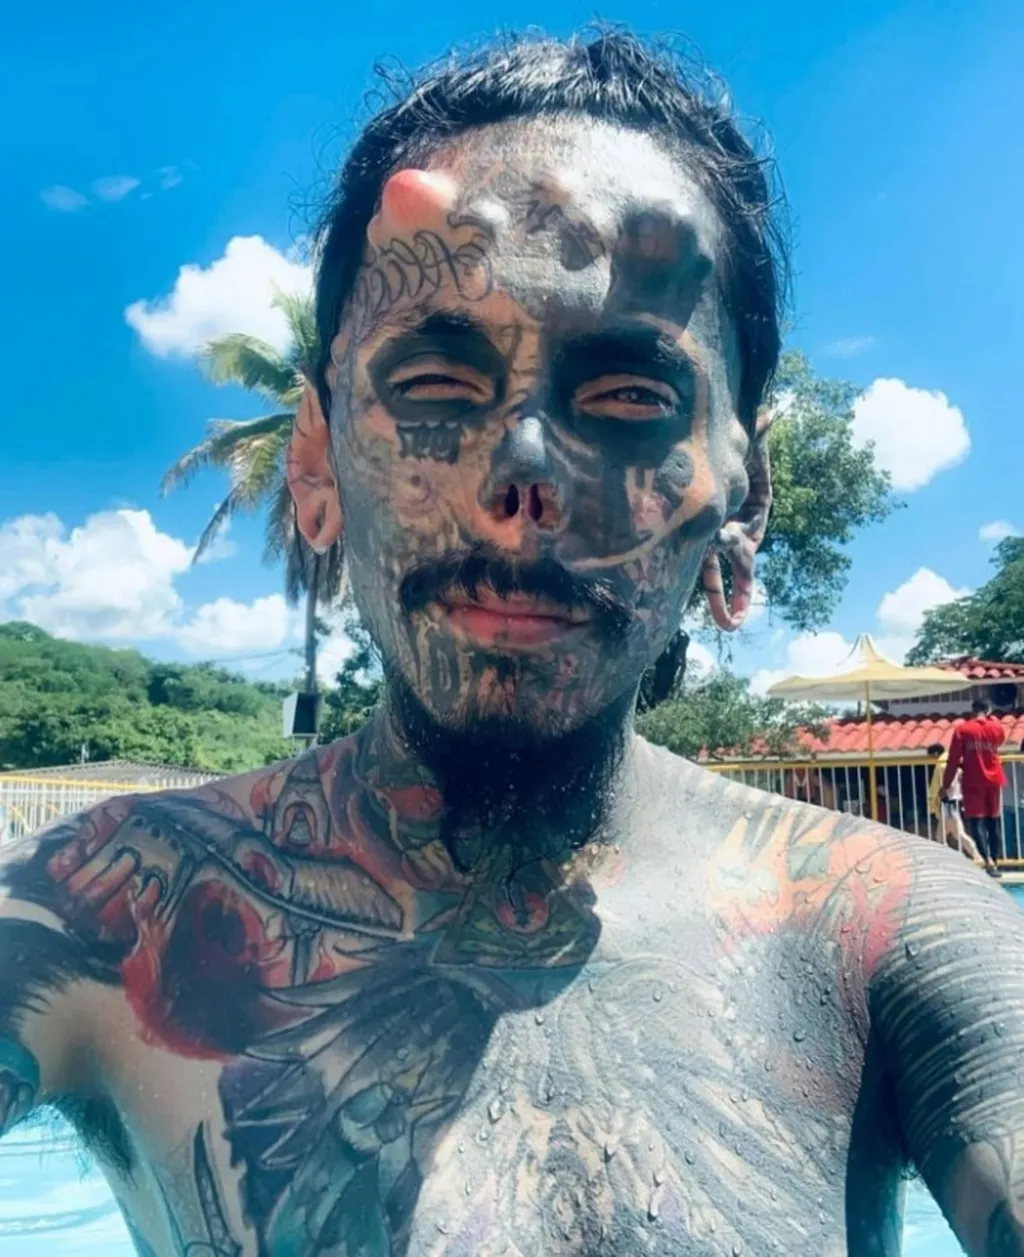 Így torzította el magát a démoni apa: 28 bőr alatti implantátum, és rengeteg tetoválás borítja a férfi testét, Larry Botello González